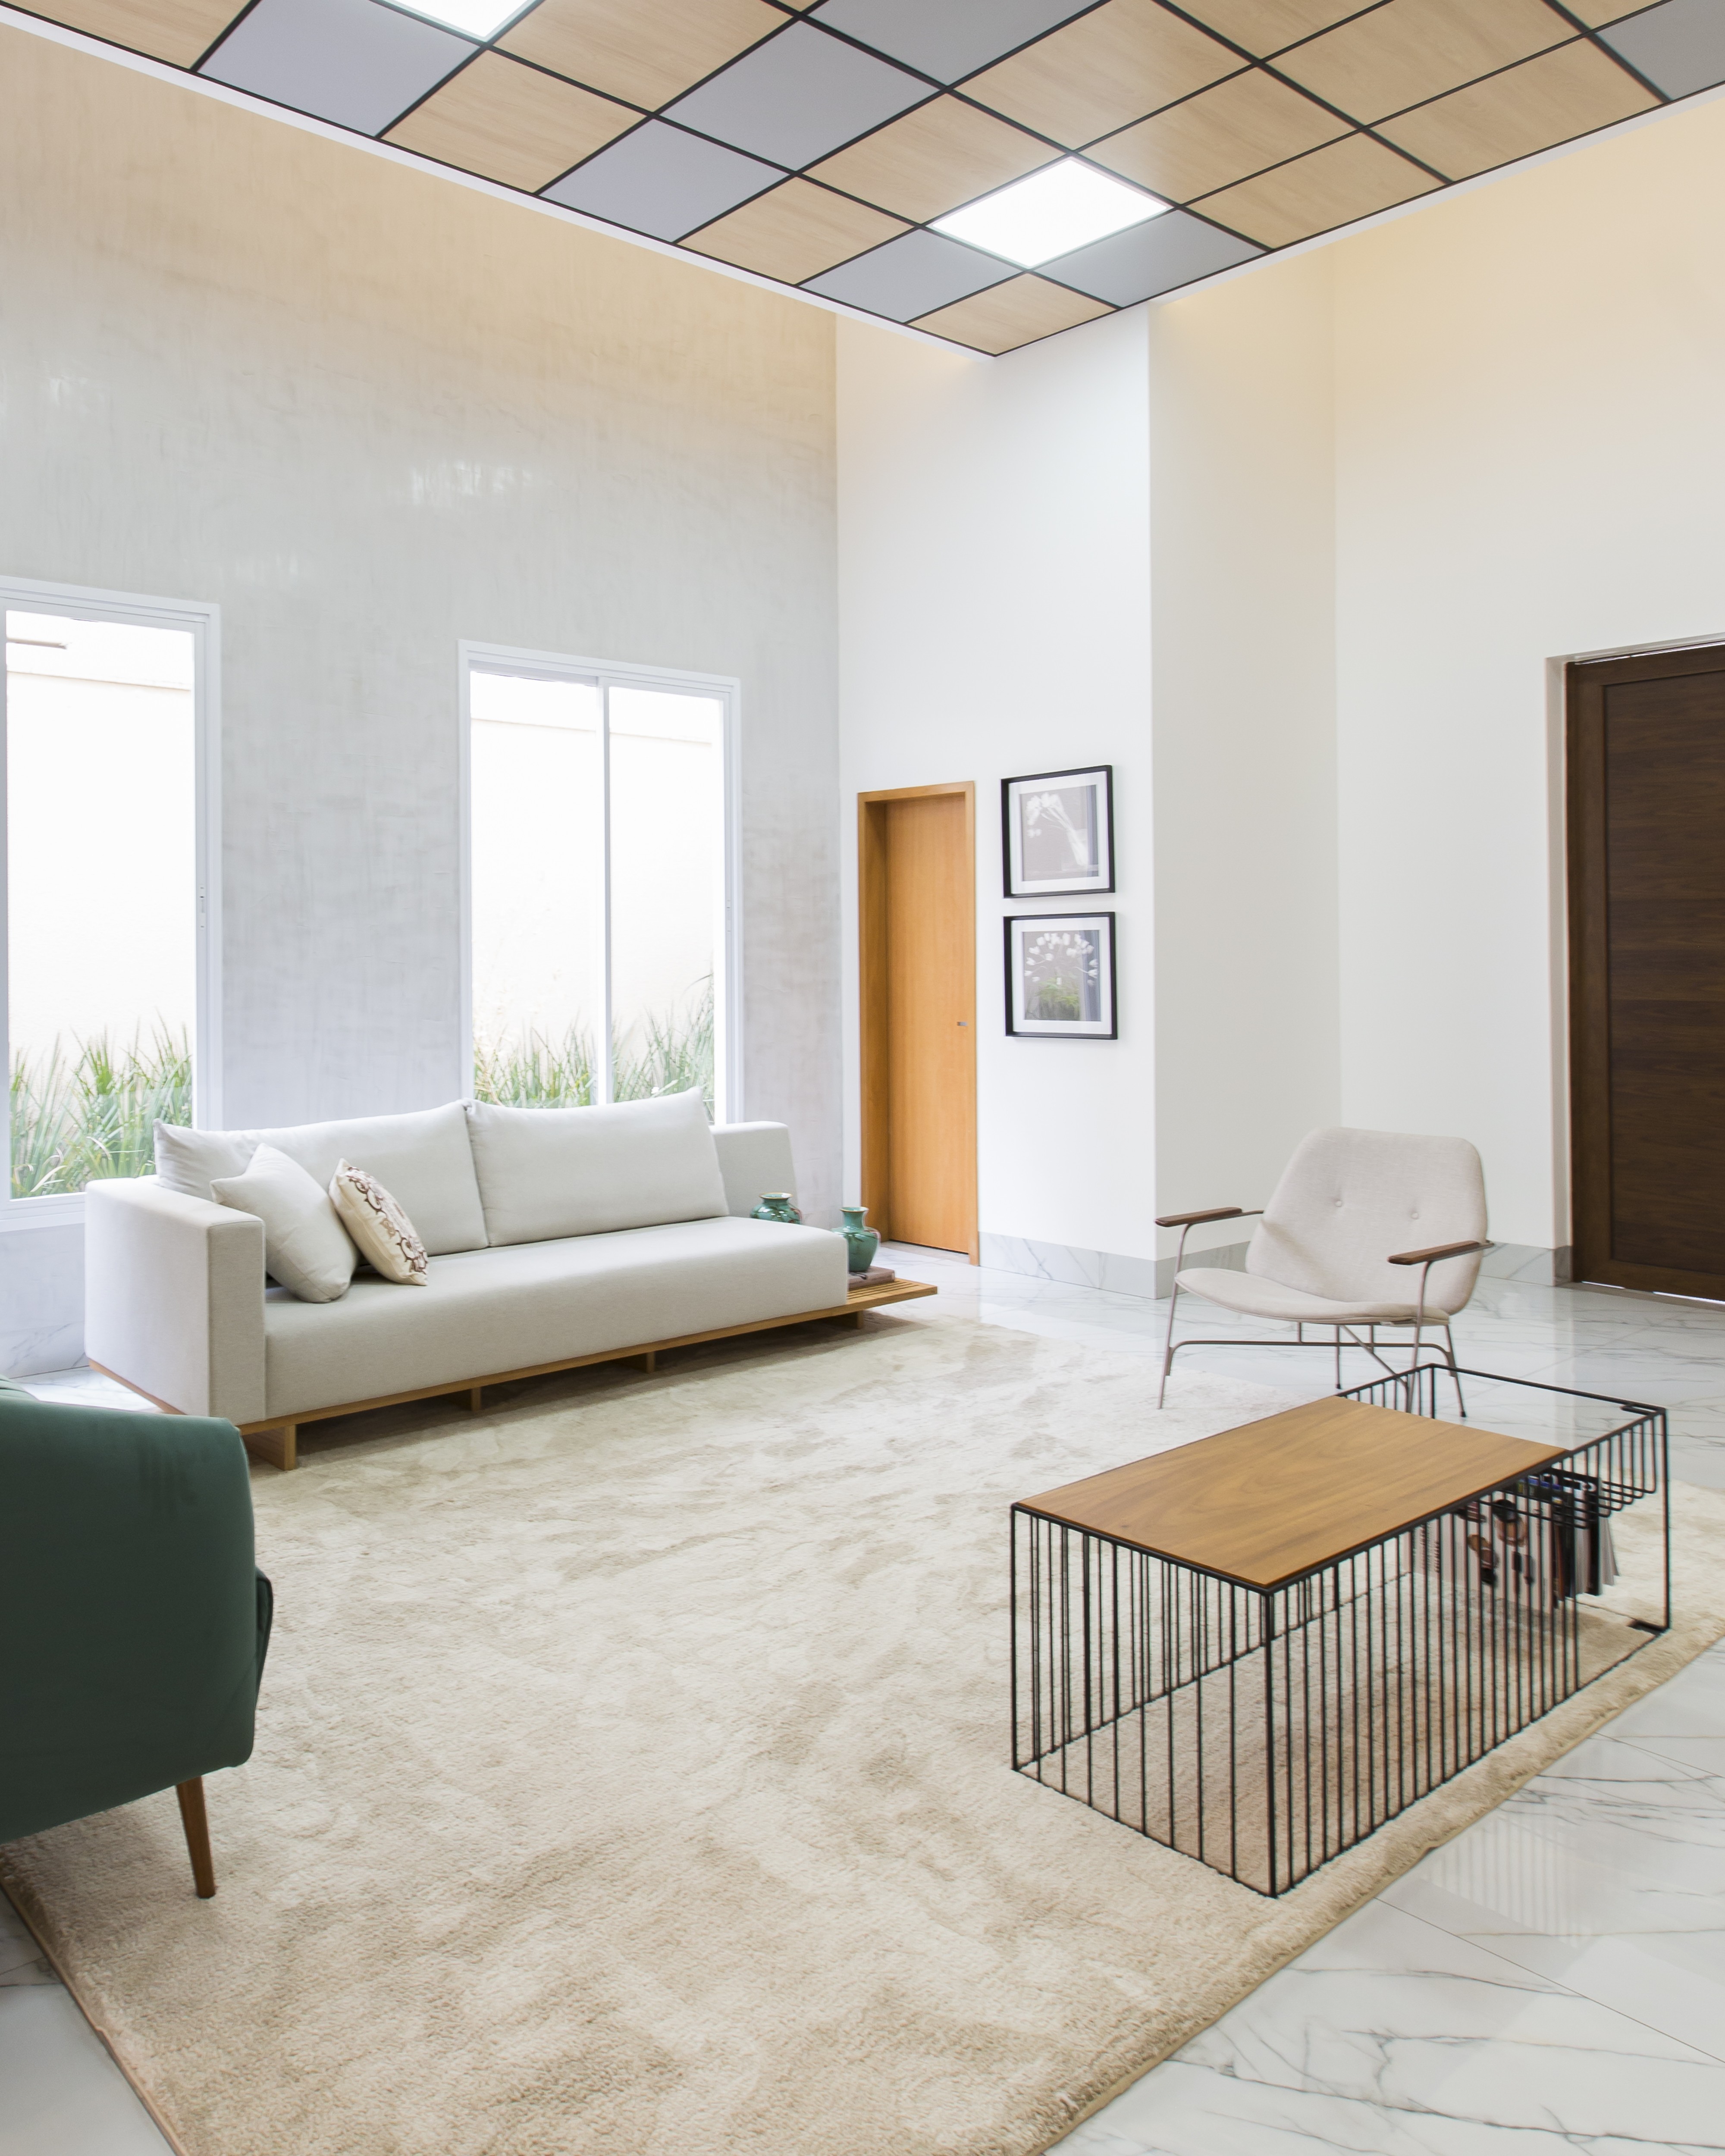 Décor do dia: sala com estilo minimalista reúne sofá verde, plantas e cestaria (Foto: Isabela Dutra)